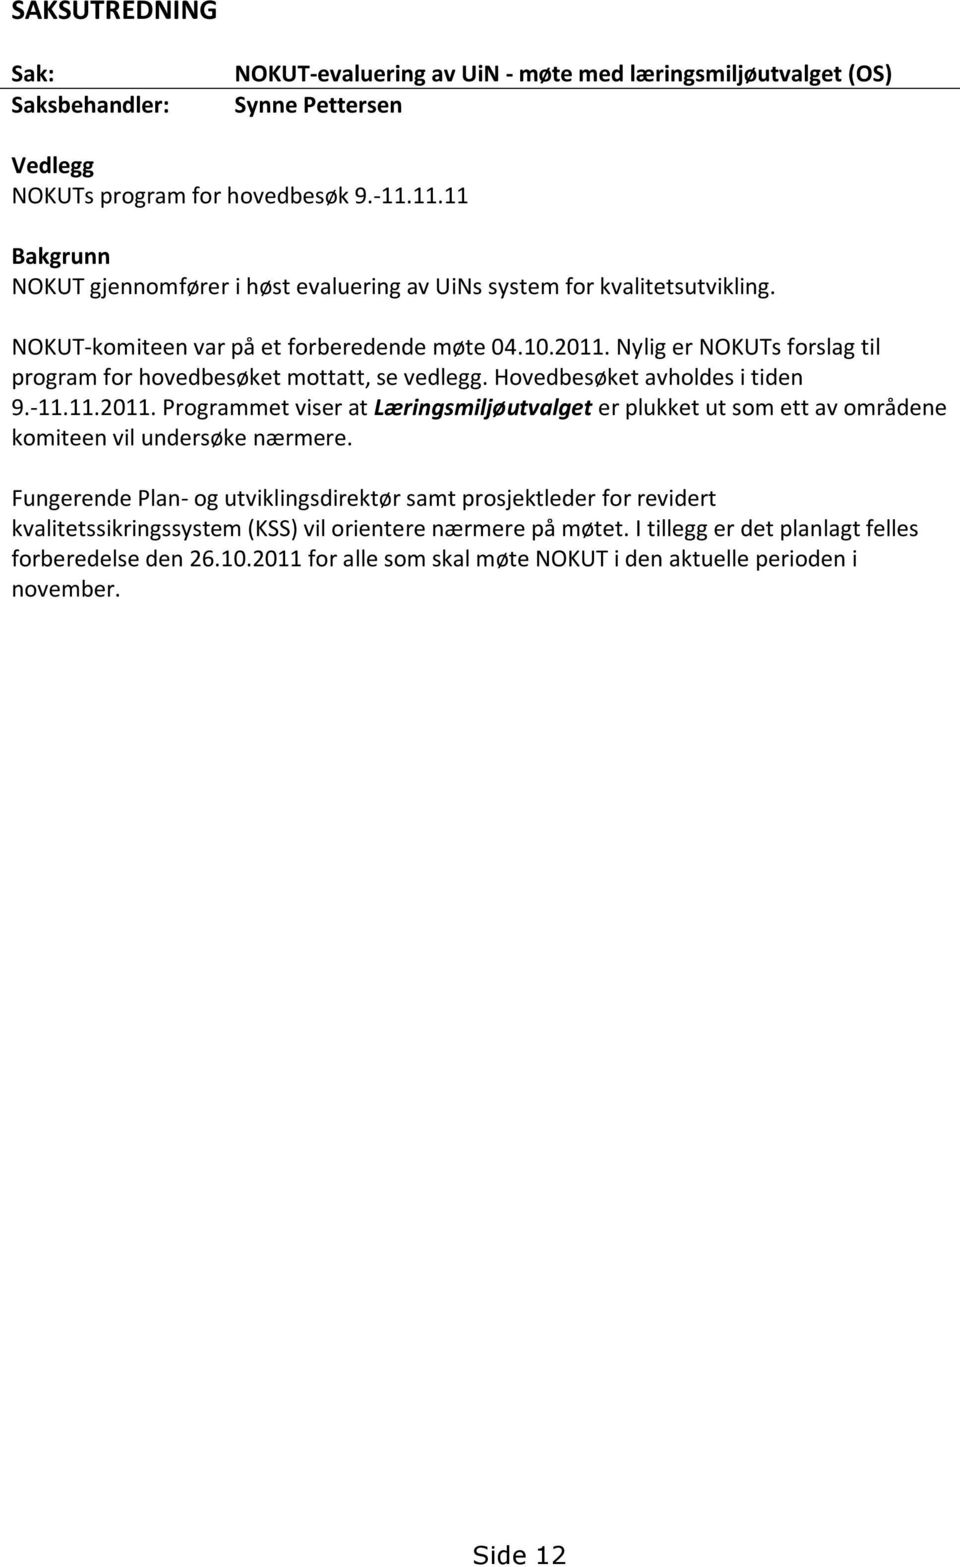 Nylig er NOKUTs forslag til program for hovedbesøket mottatt, se vedlegg. Hovedbesøket avholdes i tiden 9.-11.11.2011.